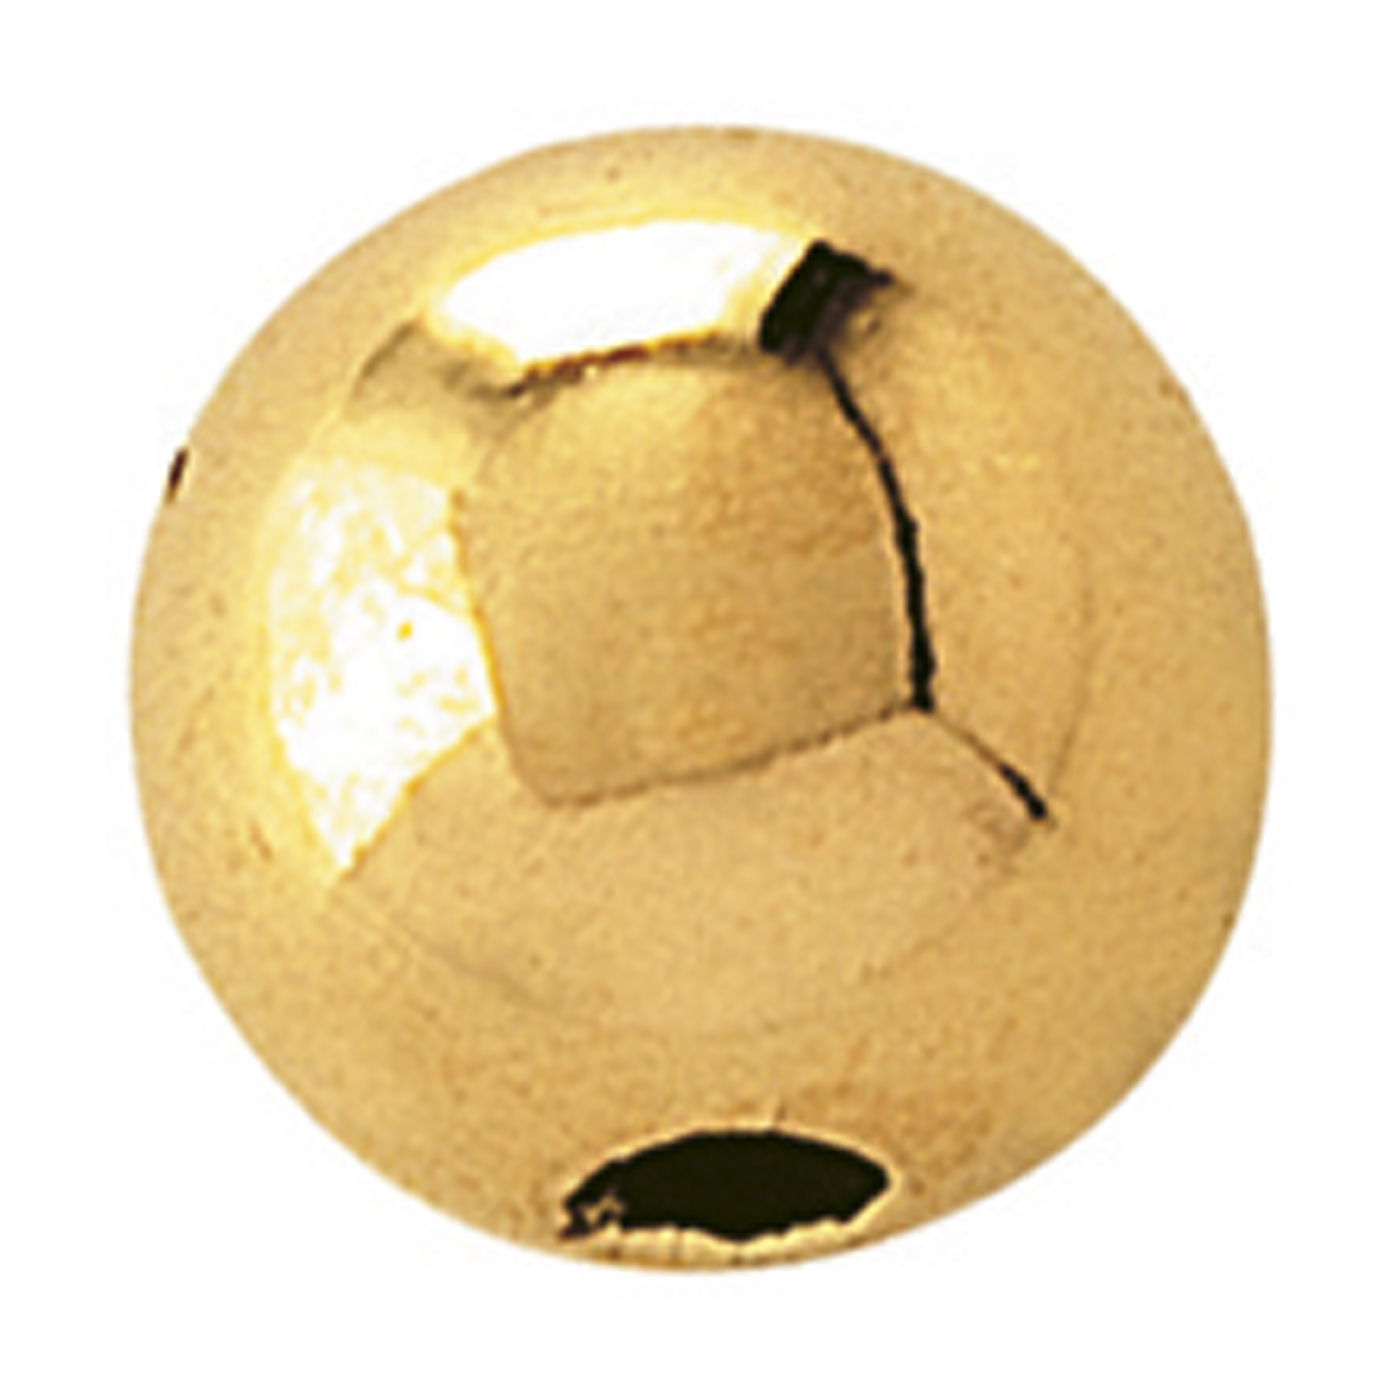 2-Hole Ball, 750G Polished, ø 4 mm - 1 piece